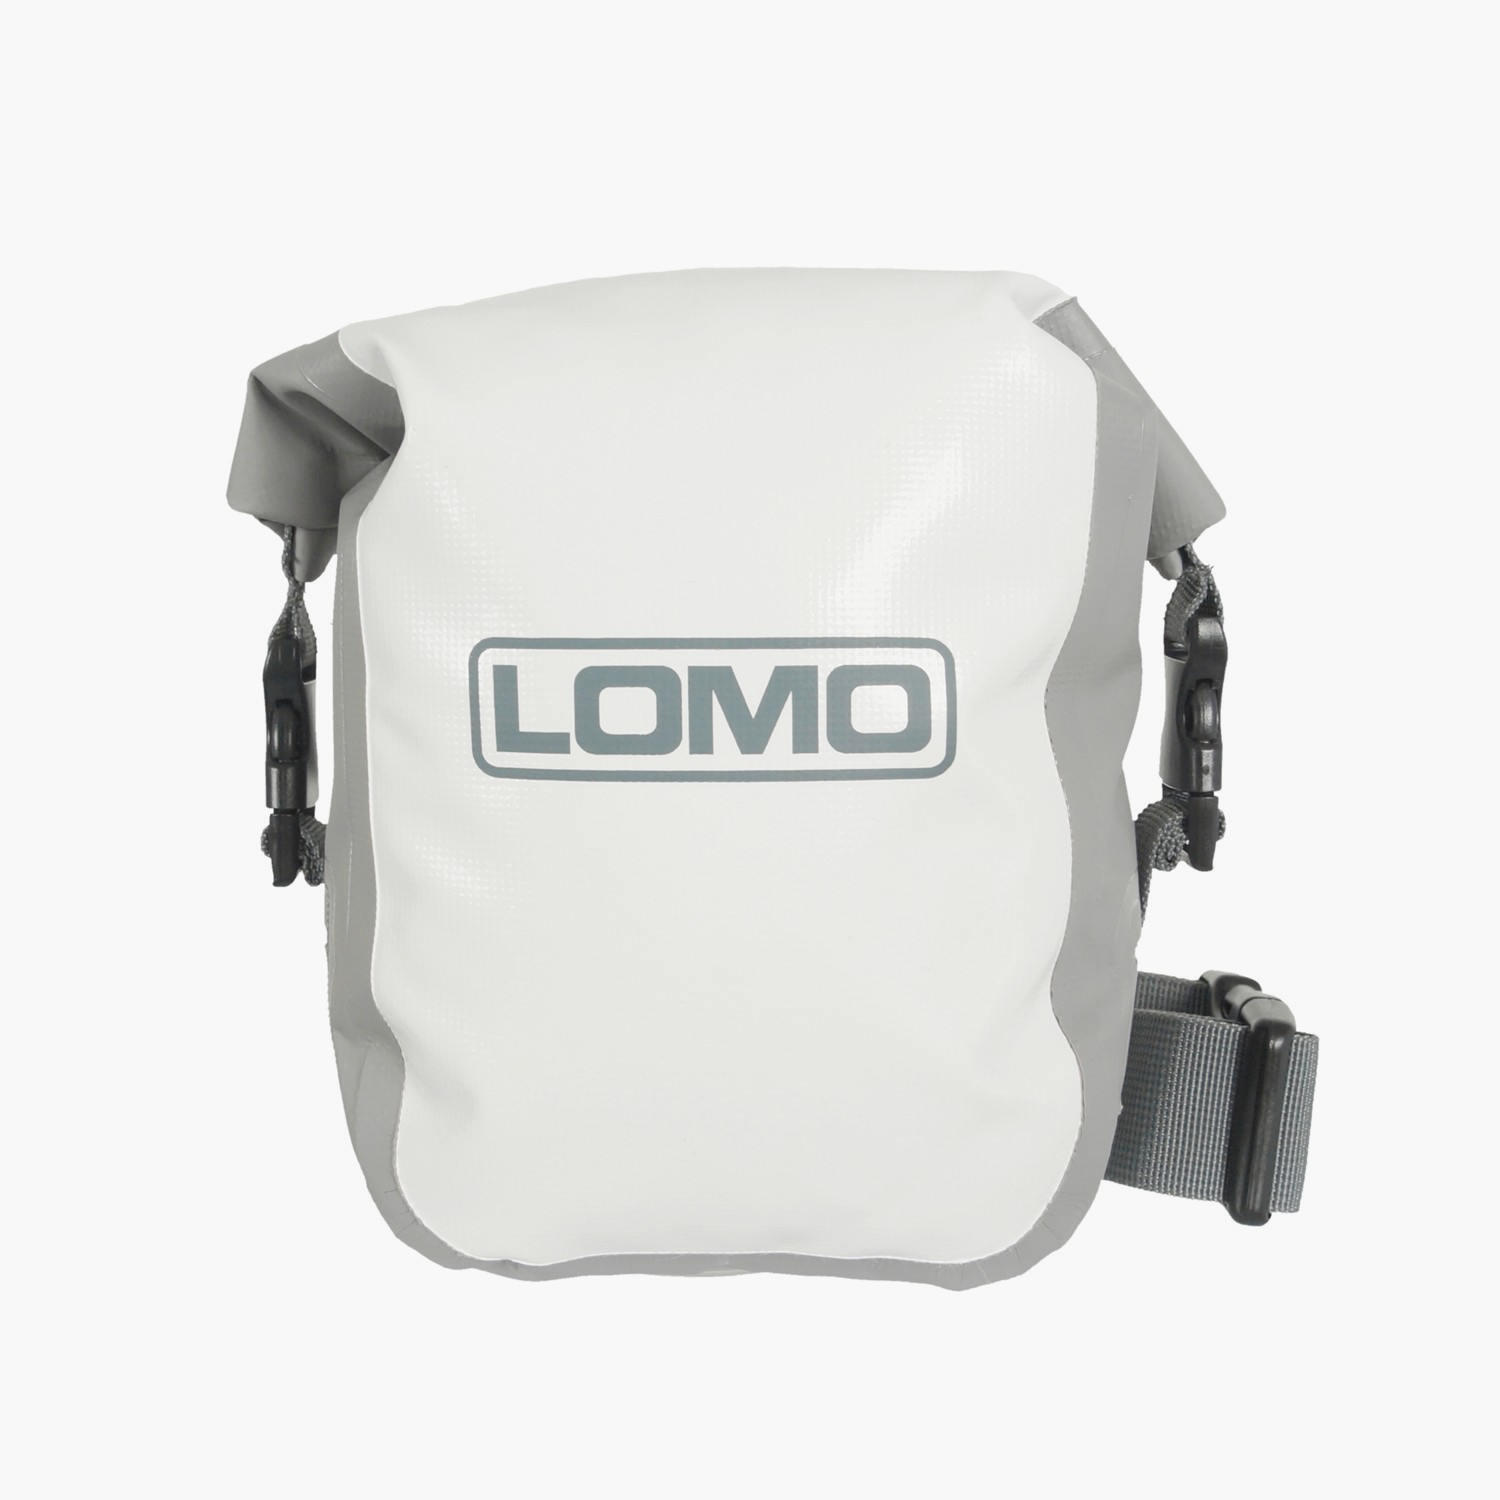 LOMO Lomo Dry Bag - Bum Bag Waist Pouch